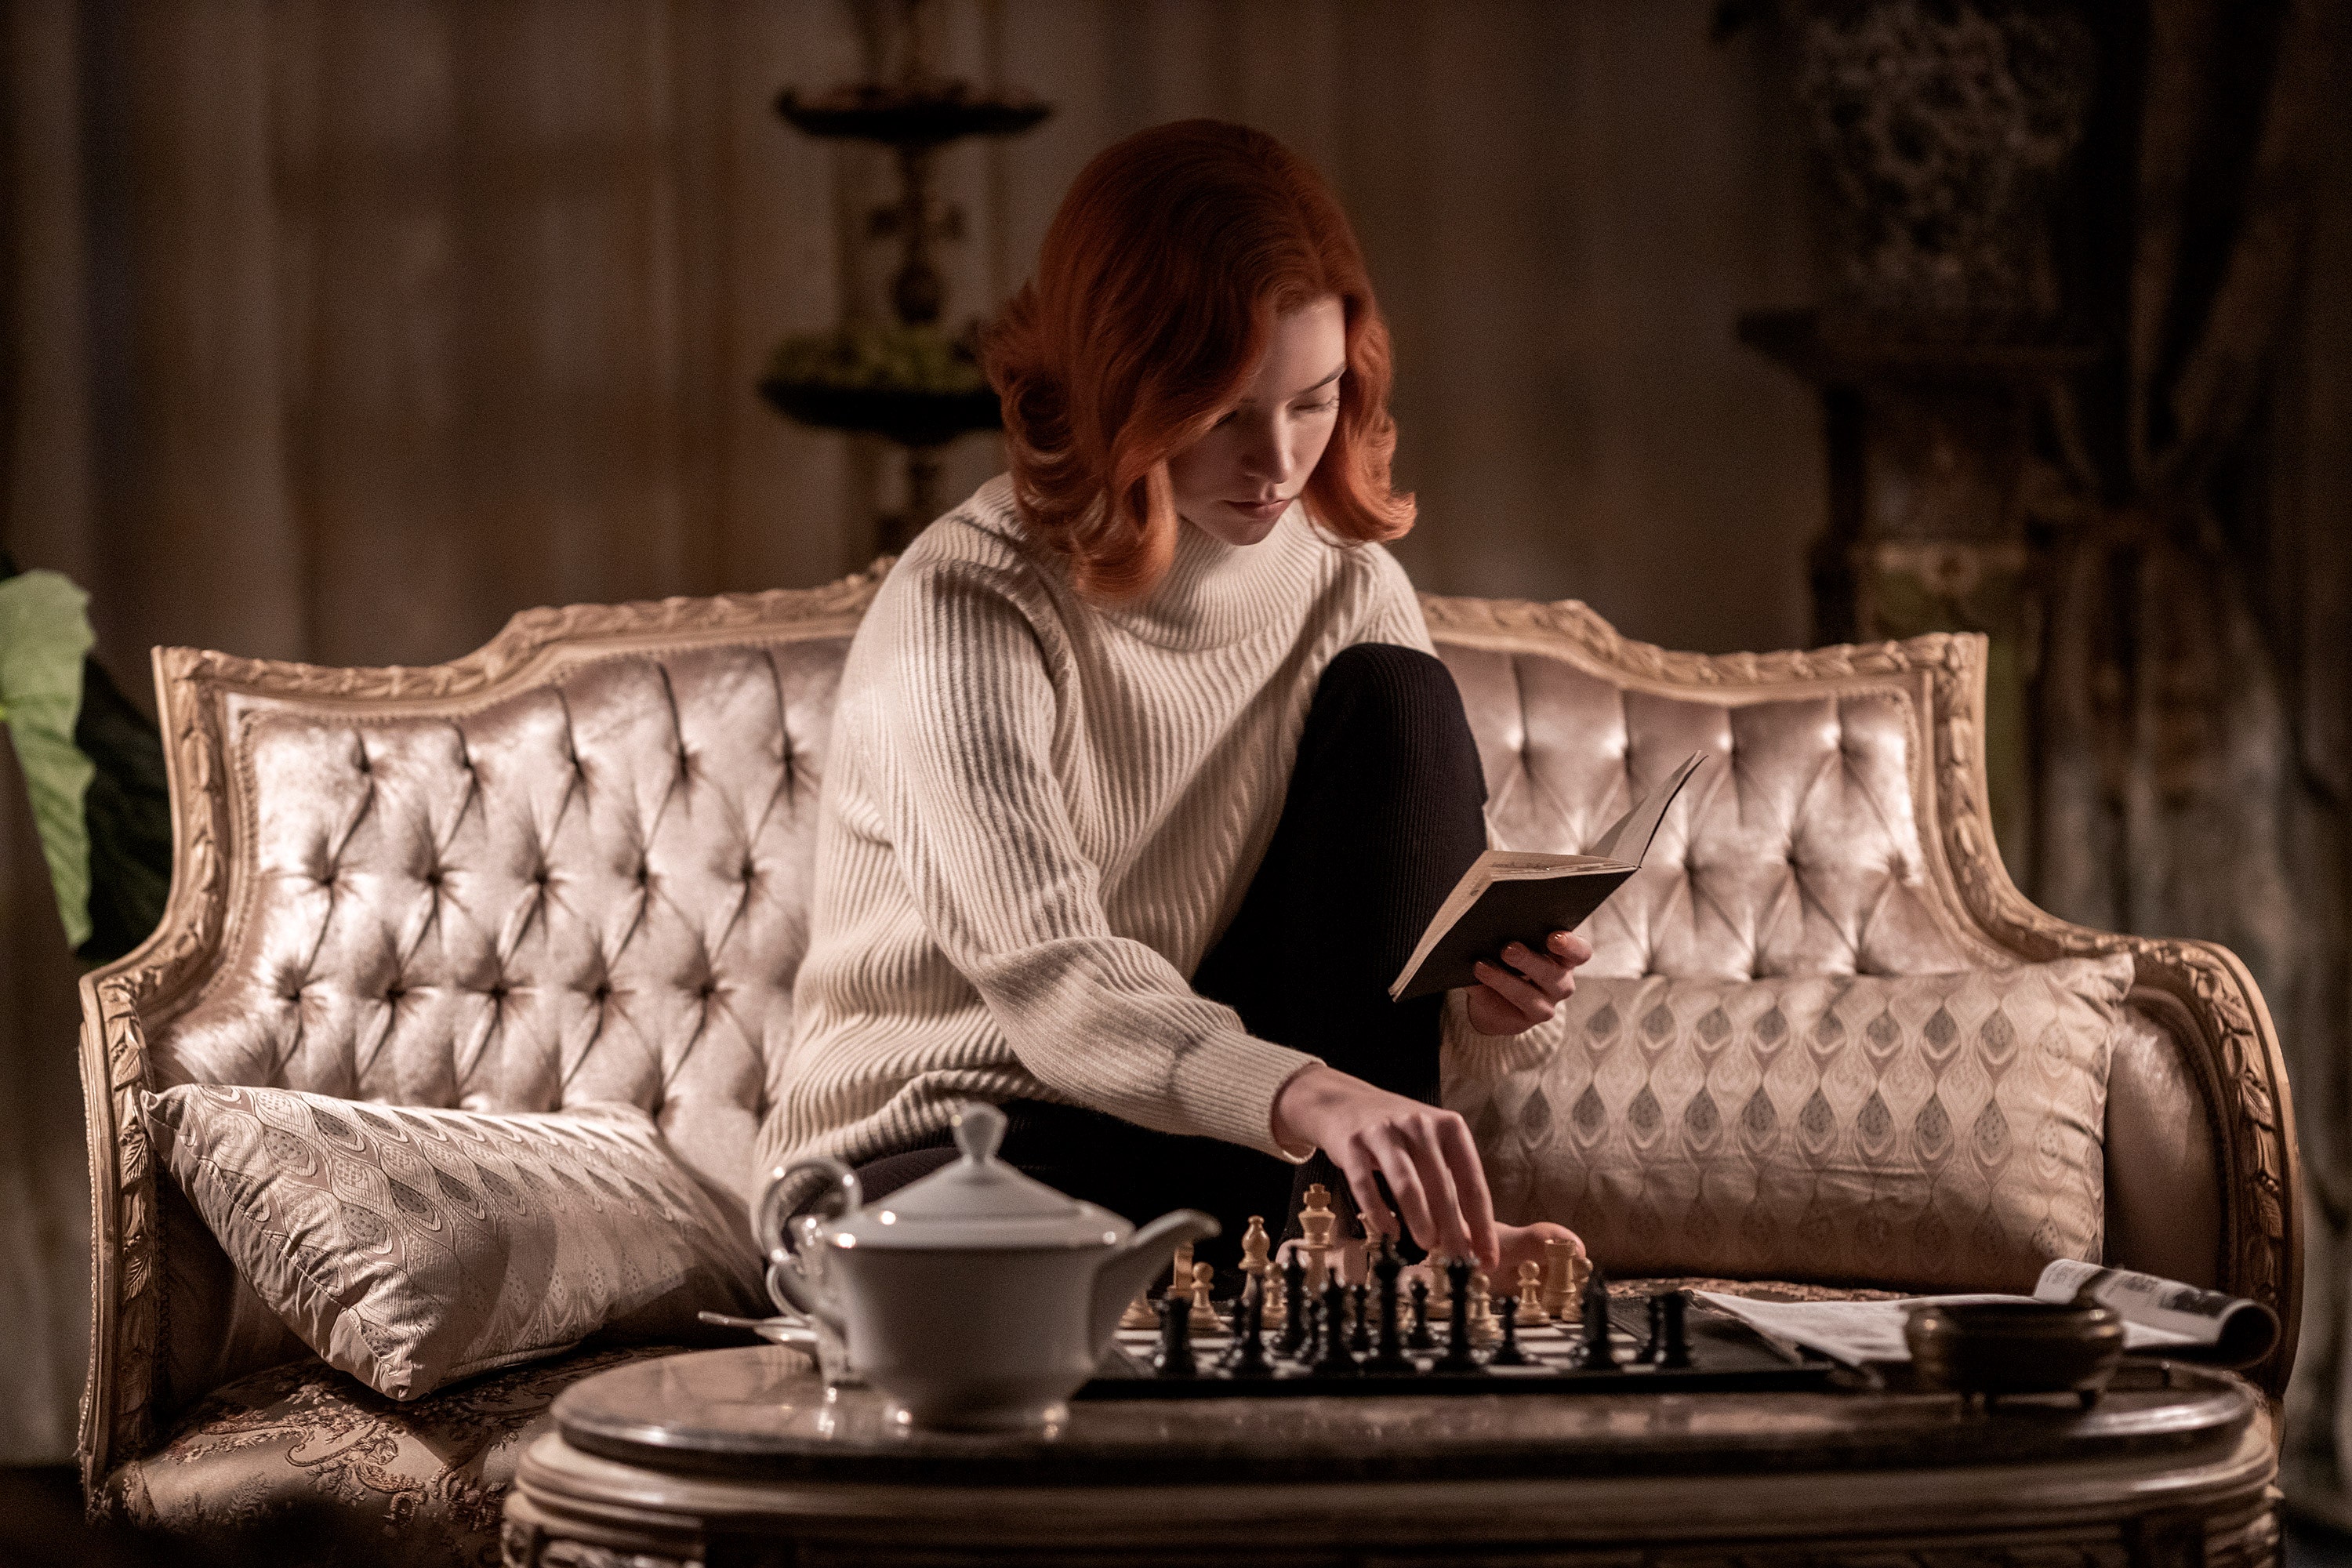 ¿Te gustaría jugar ajedrez contra la campeona mundial Beth Harmon de Gambito de Dama?